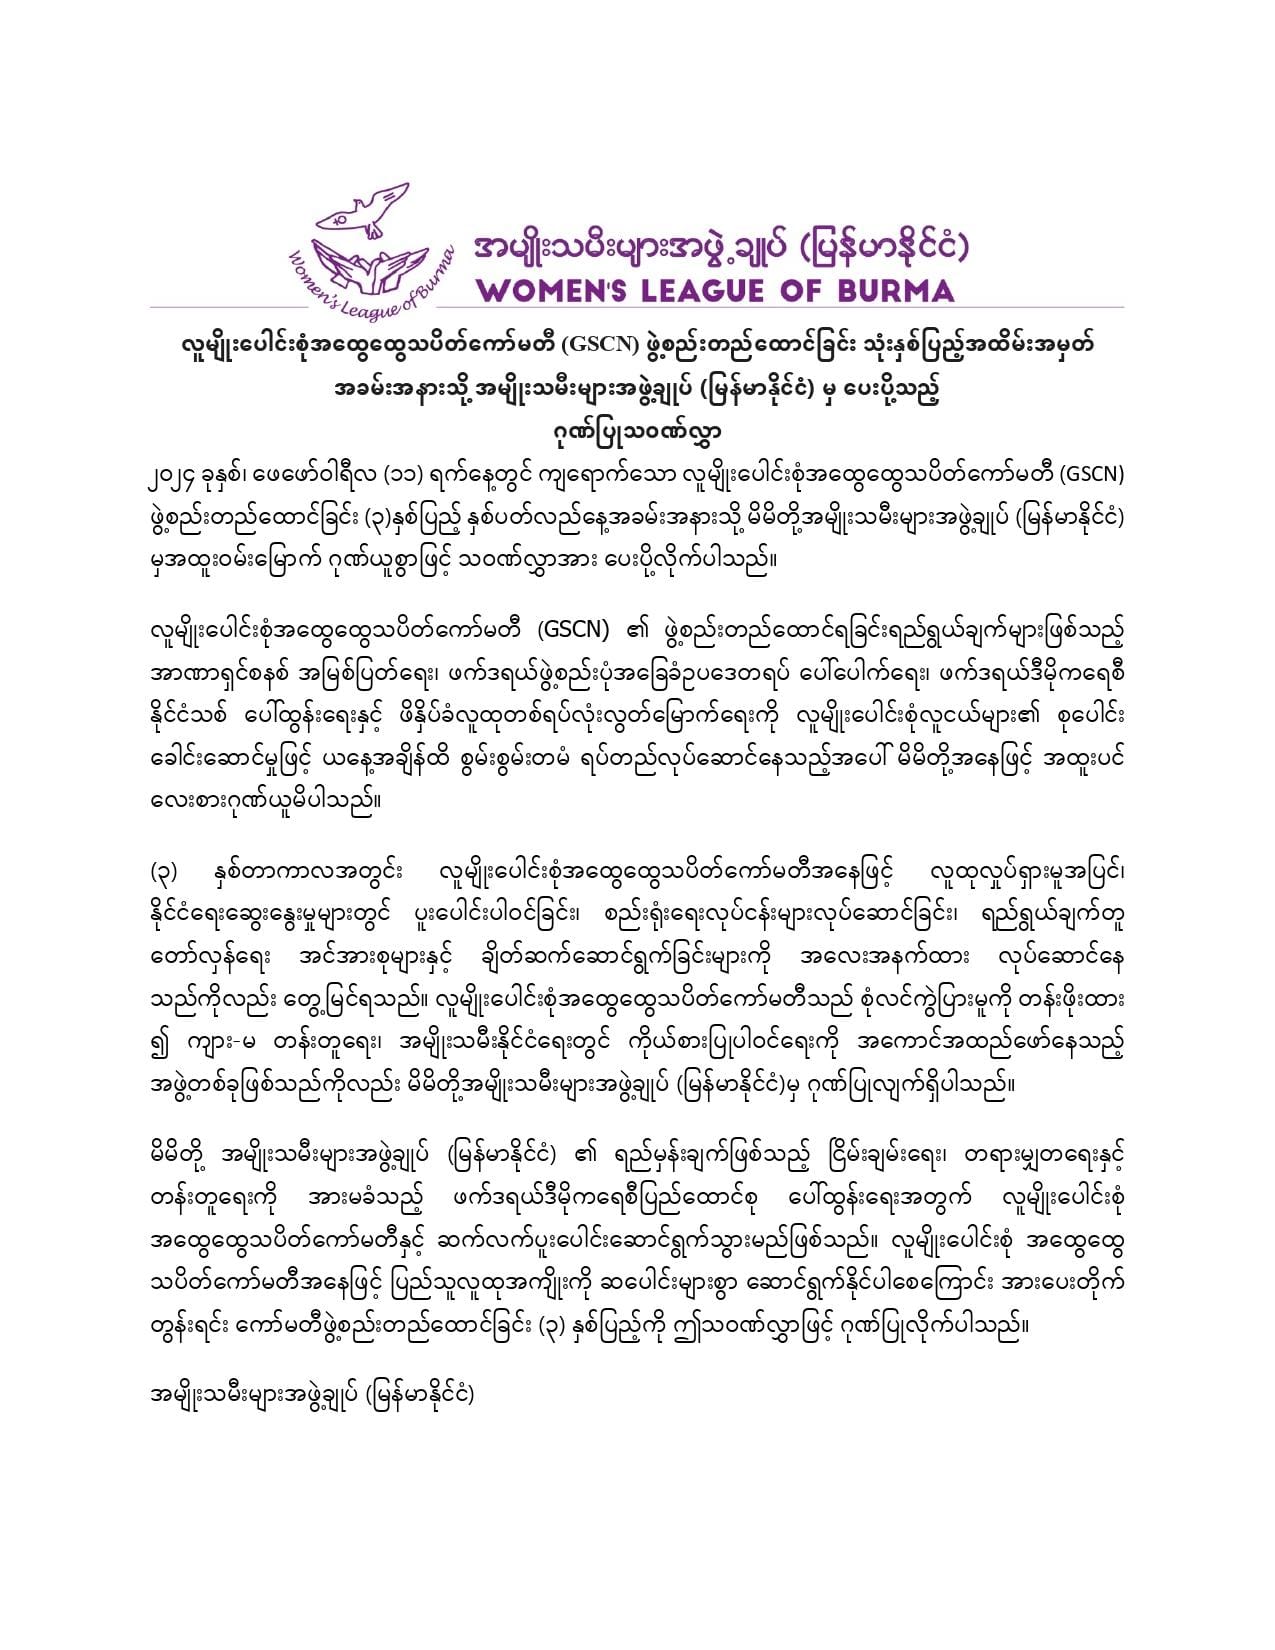 လူမျိုးပေါင်းစုံအထွေထွေသပိတ်ကော်မတီ (GSCN) ဖွဲ့စည်းတည်ထောင်ခြင်းသုံးနှစ်ပြည့် နှစ်ပတ်လည်အထိမ်းအမှတ်သို့ အမျိုးသမီးများအဖွဲ့ချုပ် (မြန်မာနိုင်ငံ) Women's League of Burma (WLB) မှ ပေးပို့သော ဂုဏ်ပြုသဝဏ်လွှာ